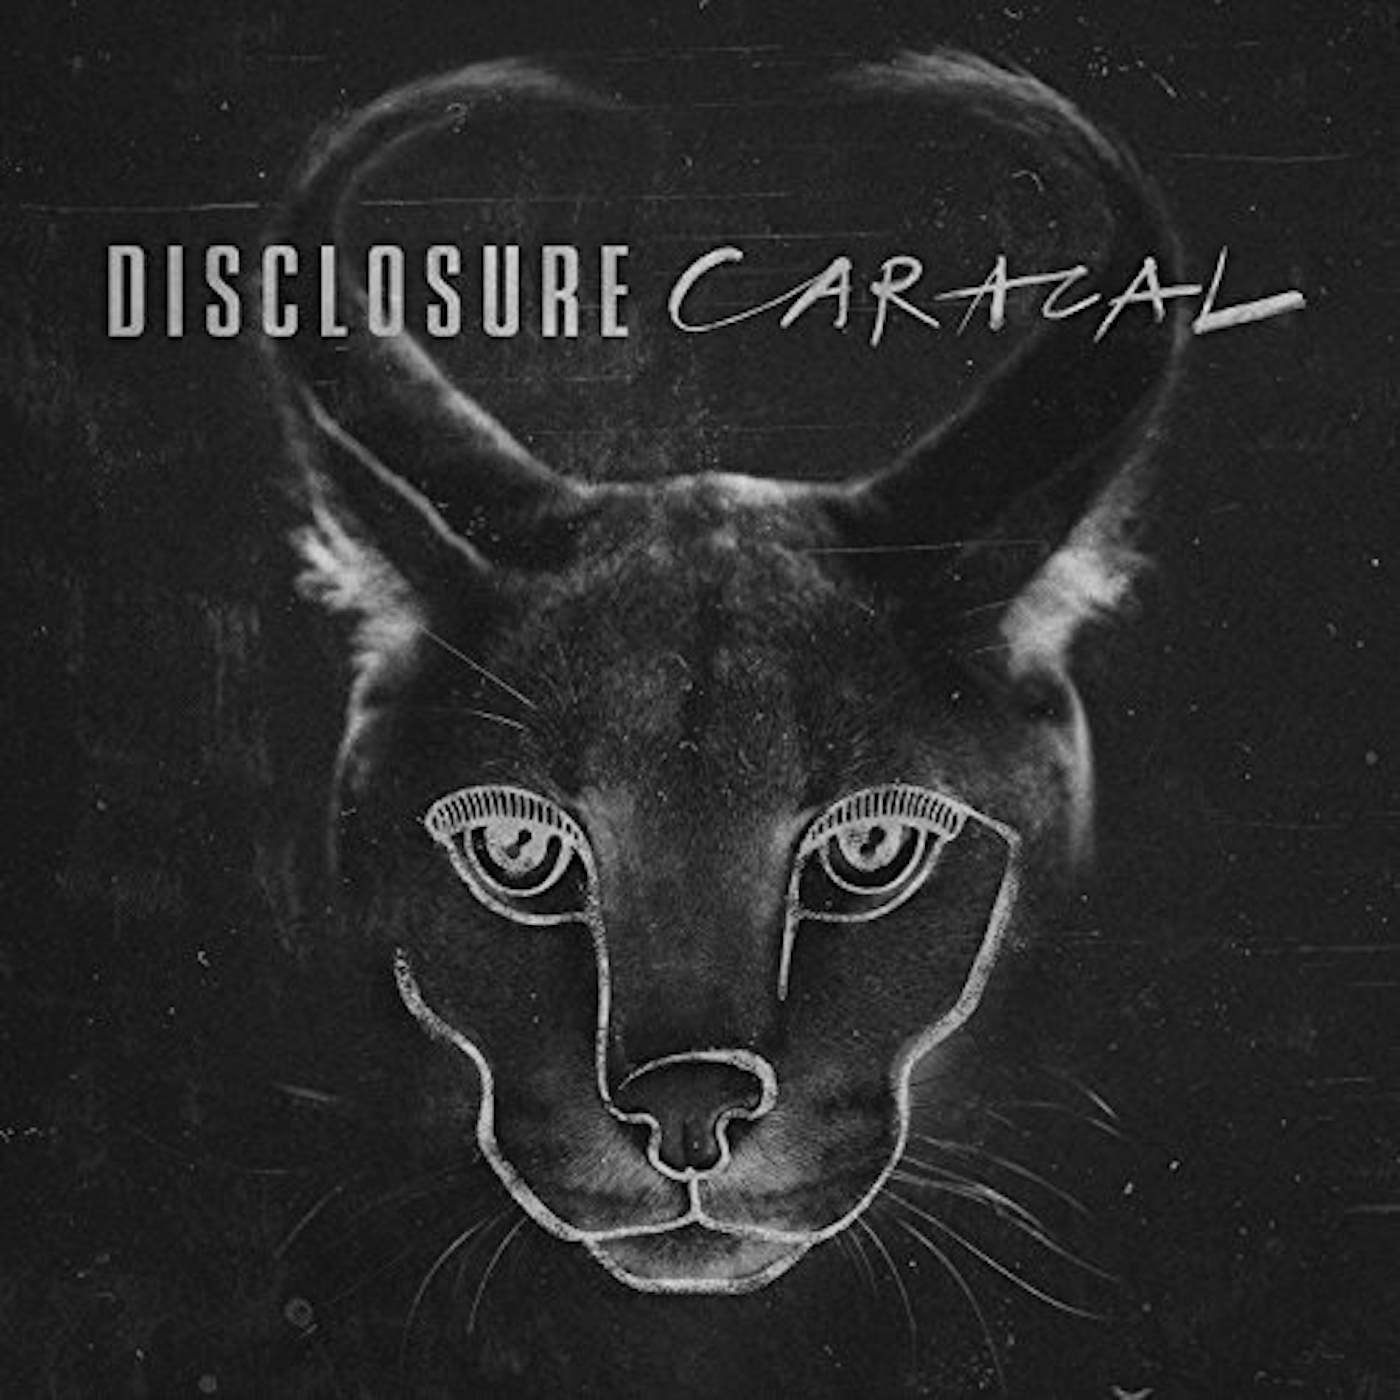 Disclosure Caracal Vinyl Record